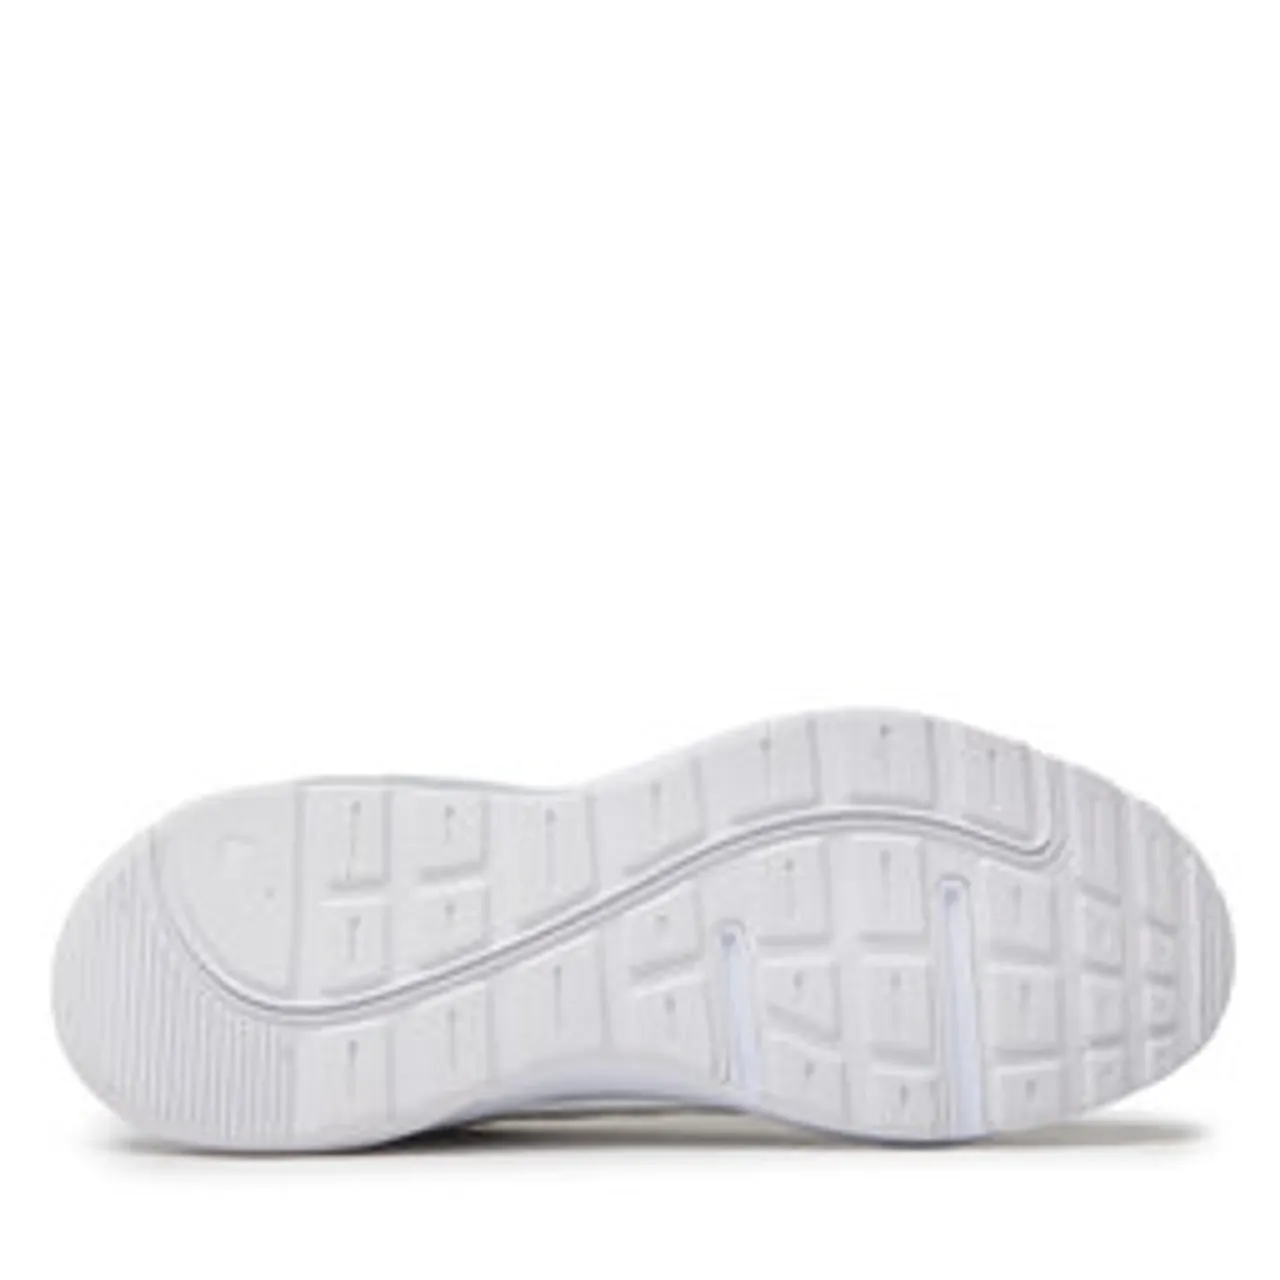 Schuhe Nike Air Max Ap CU4870 102 White